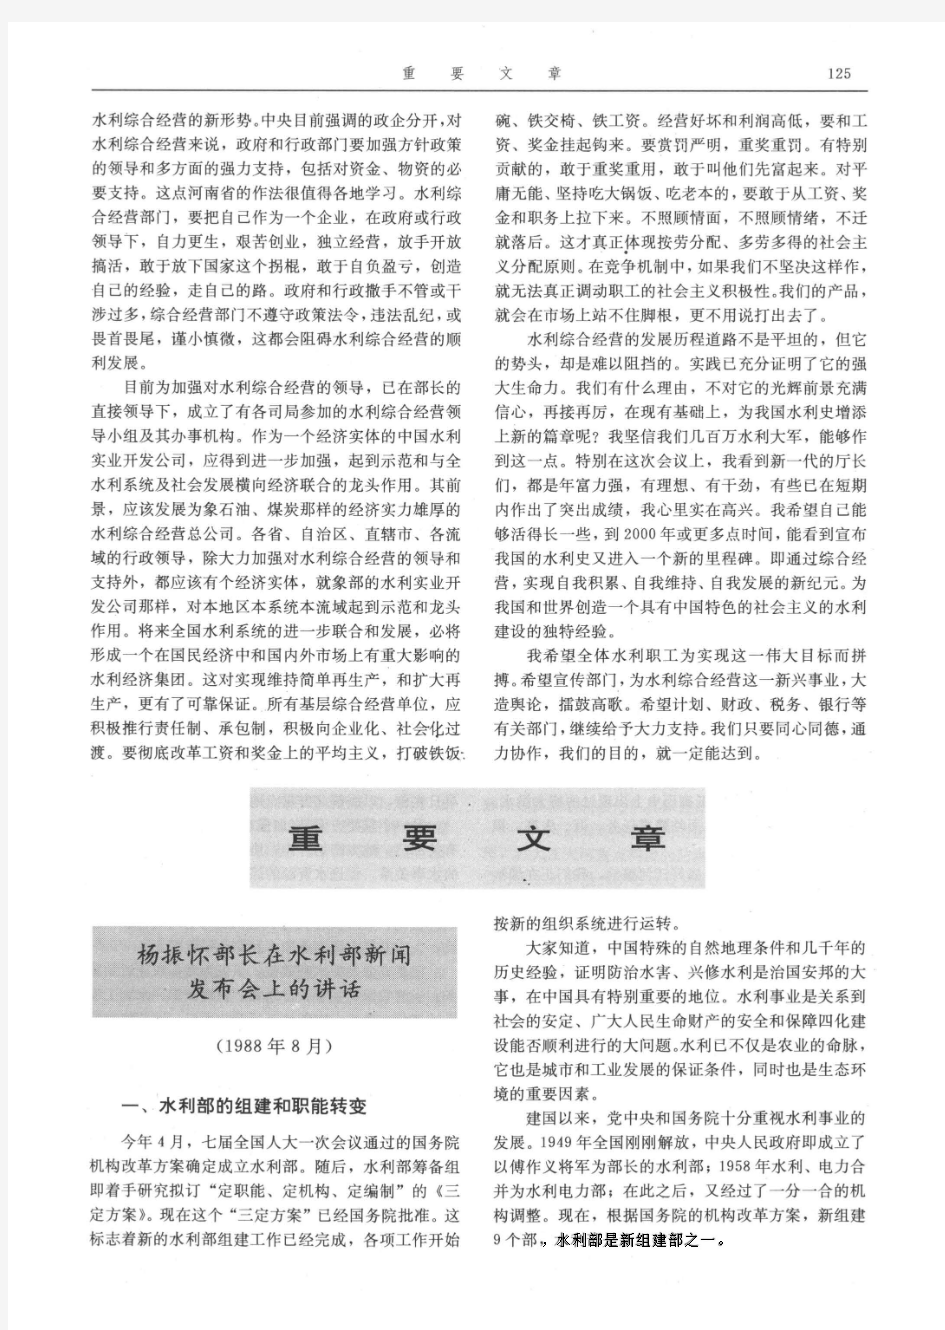 中国水利年鉴1990_重要文献-重要文章-杨振怀部长在水利部新闻发布会上的讲话(1988年8月)